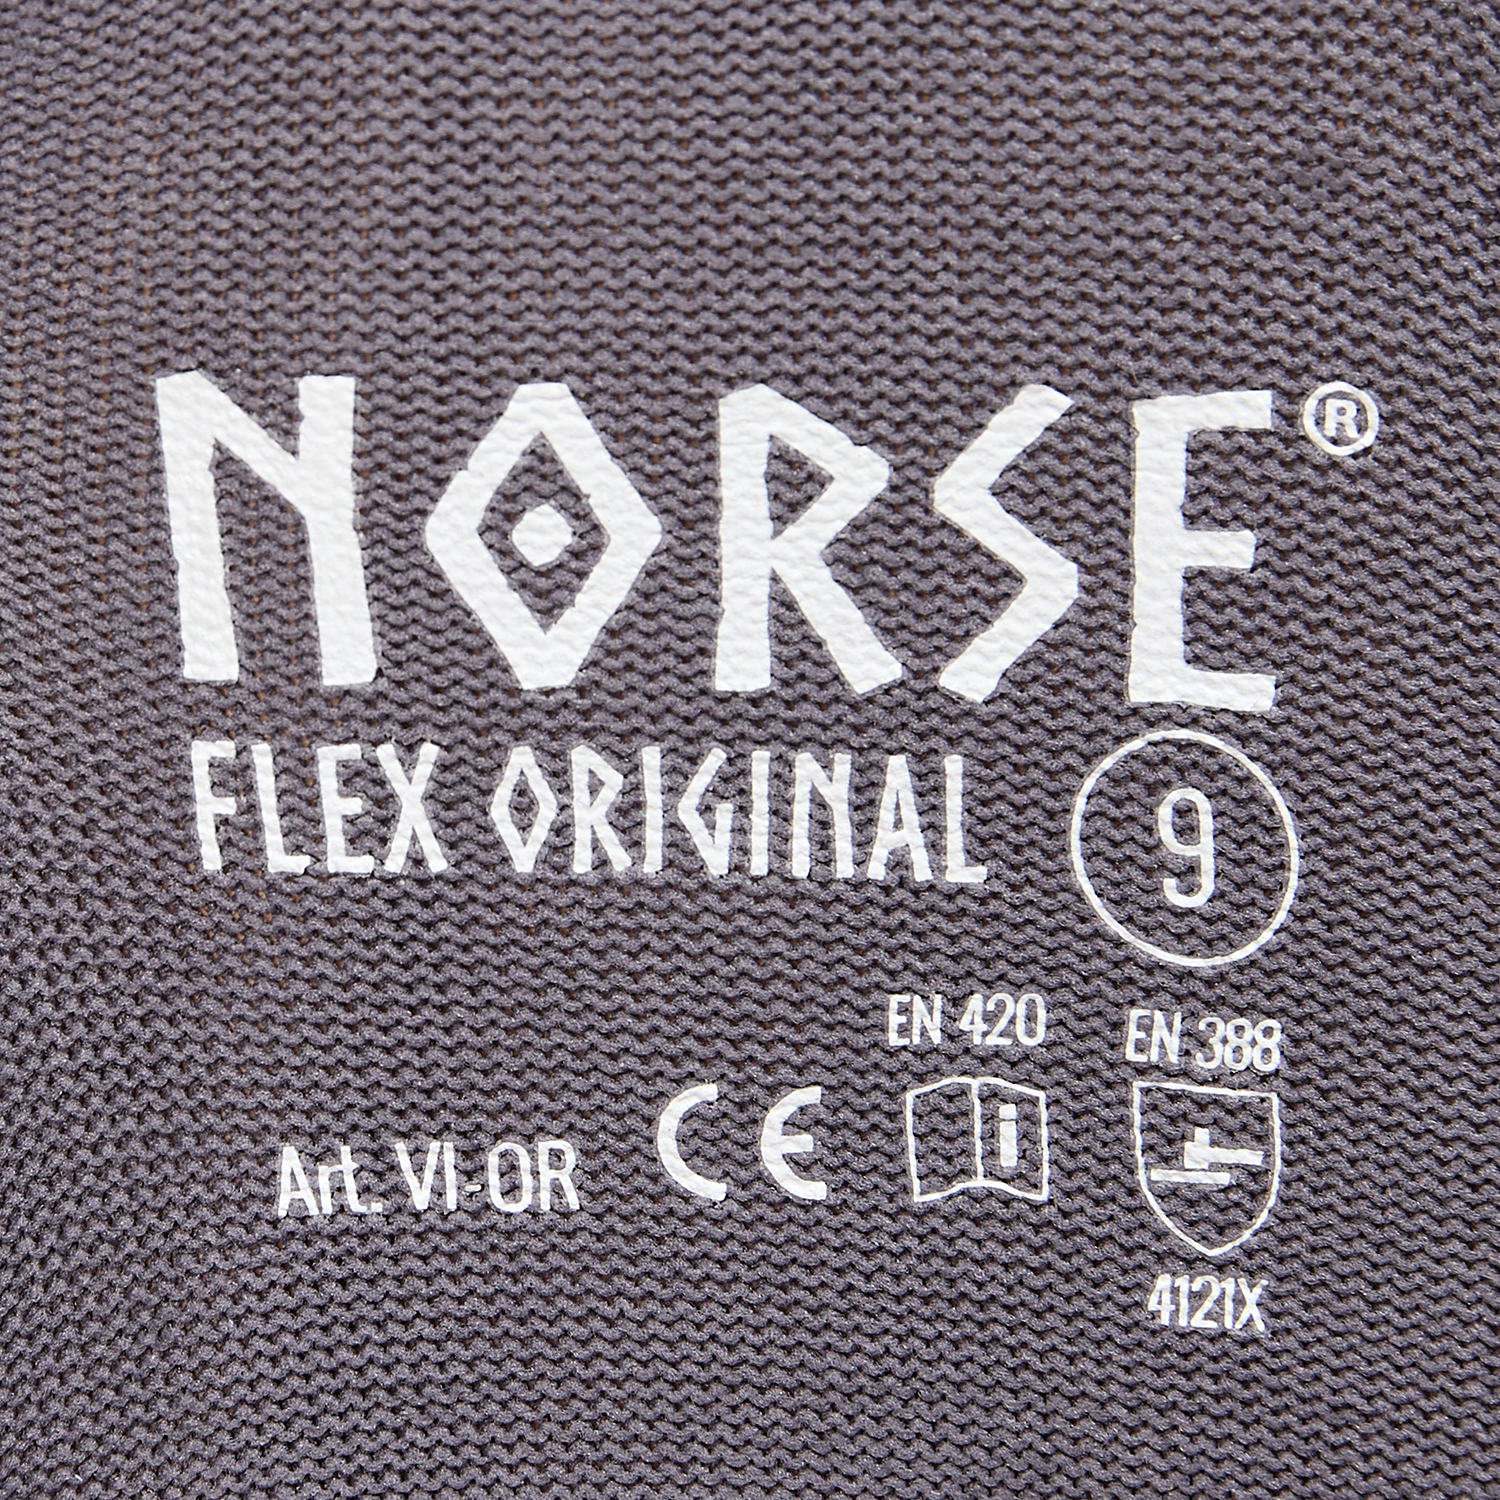 Guantes de montaje NORSE Flex Original talla 7